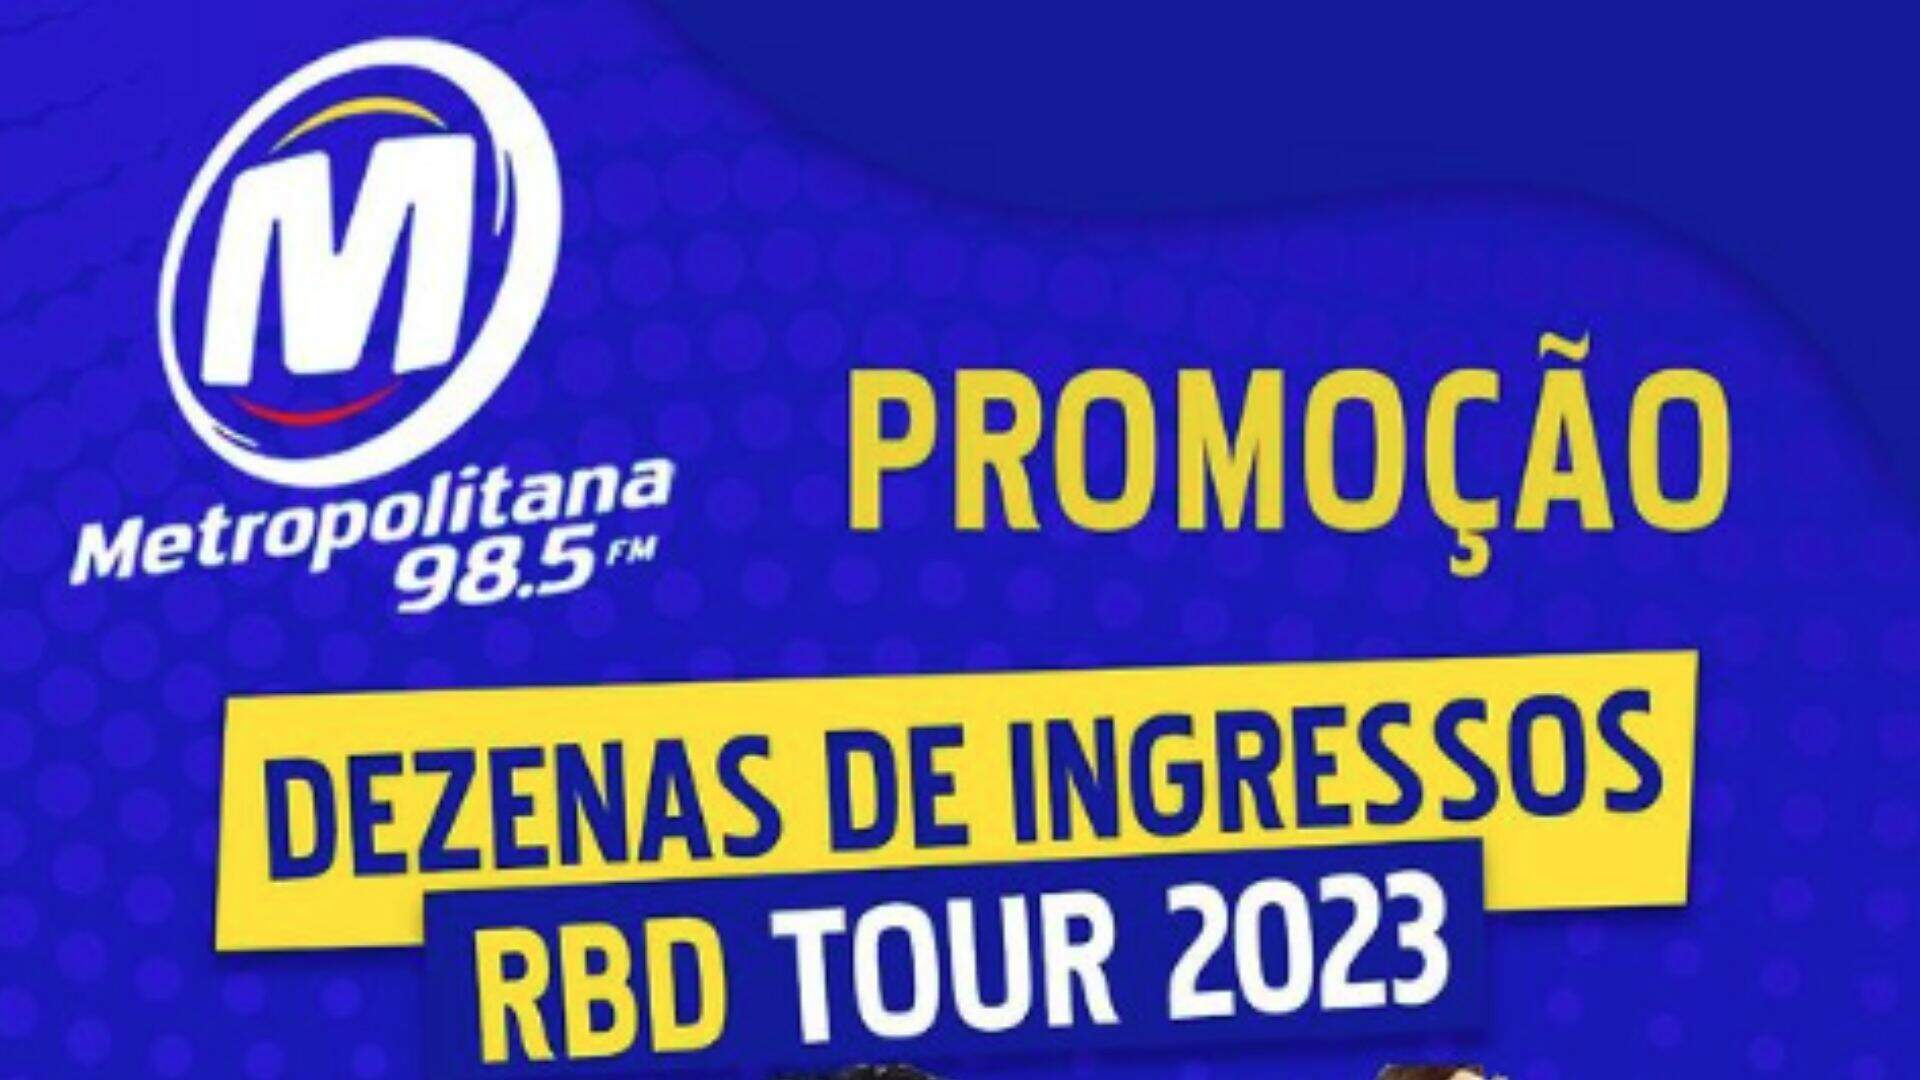 [ENCERRADA] Promoção: PAR DE INGRESSOS PARA O SHOW DA RBD TOUR NA METROPOLITANA FM